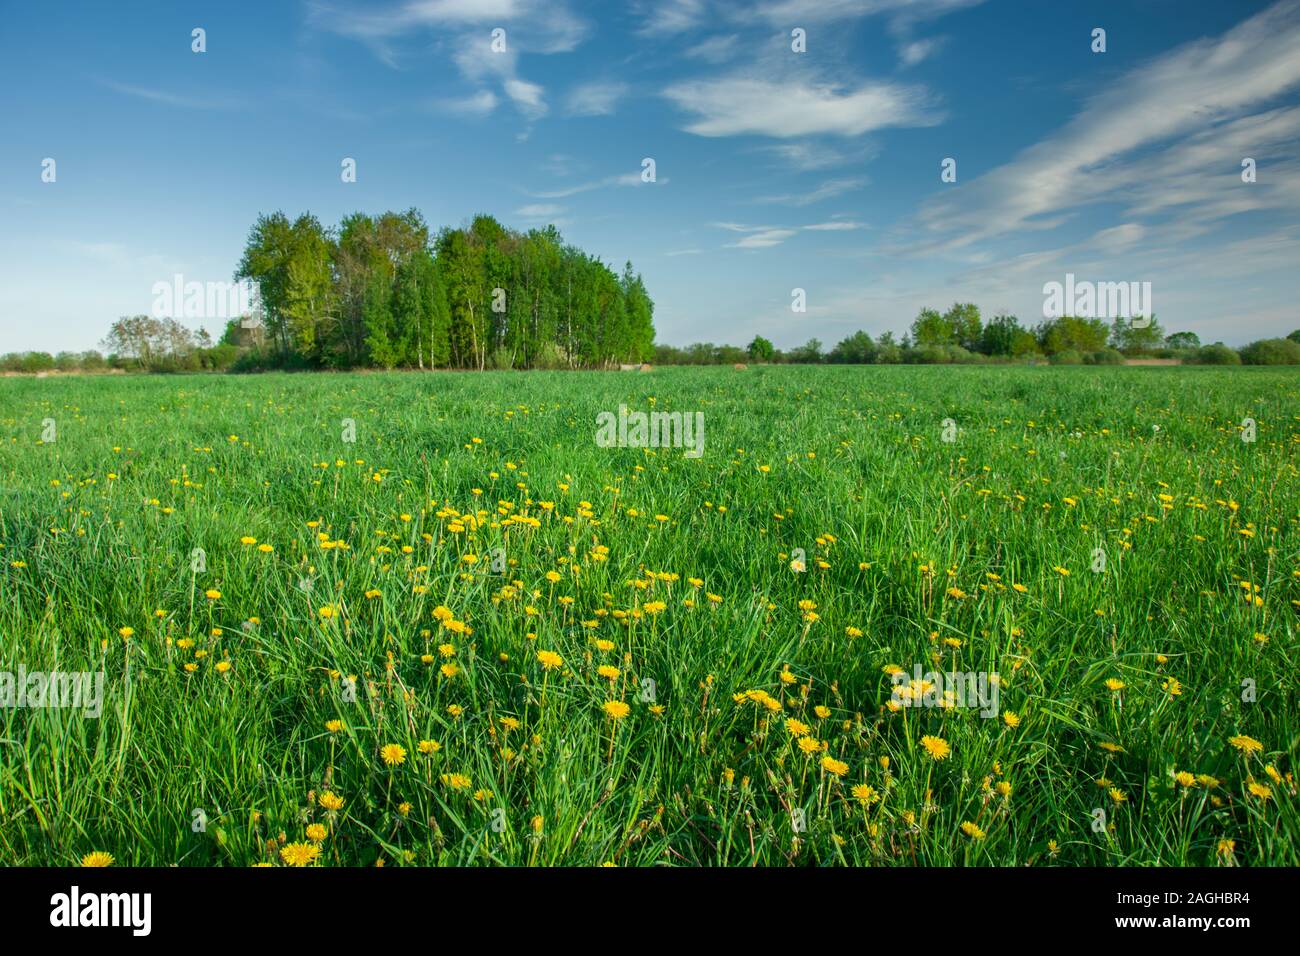 Frühling grüne Wiese mit gelben Blumen, Bäume am Horizont und die weißen Wolken am blauen Himmel Stockfoto